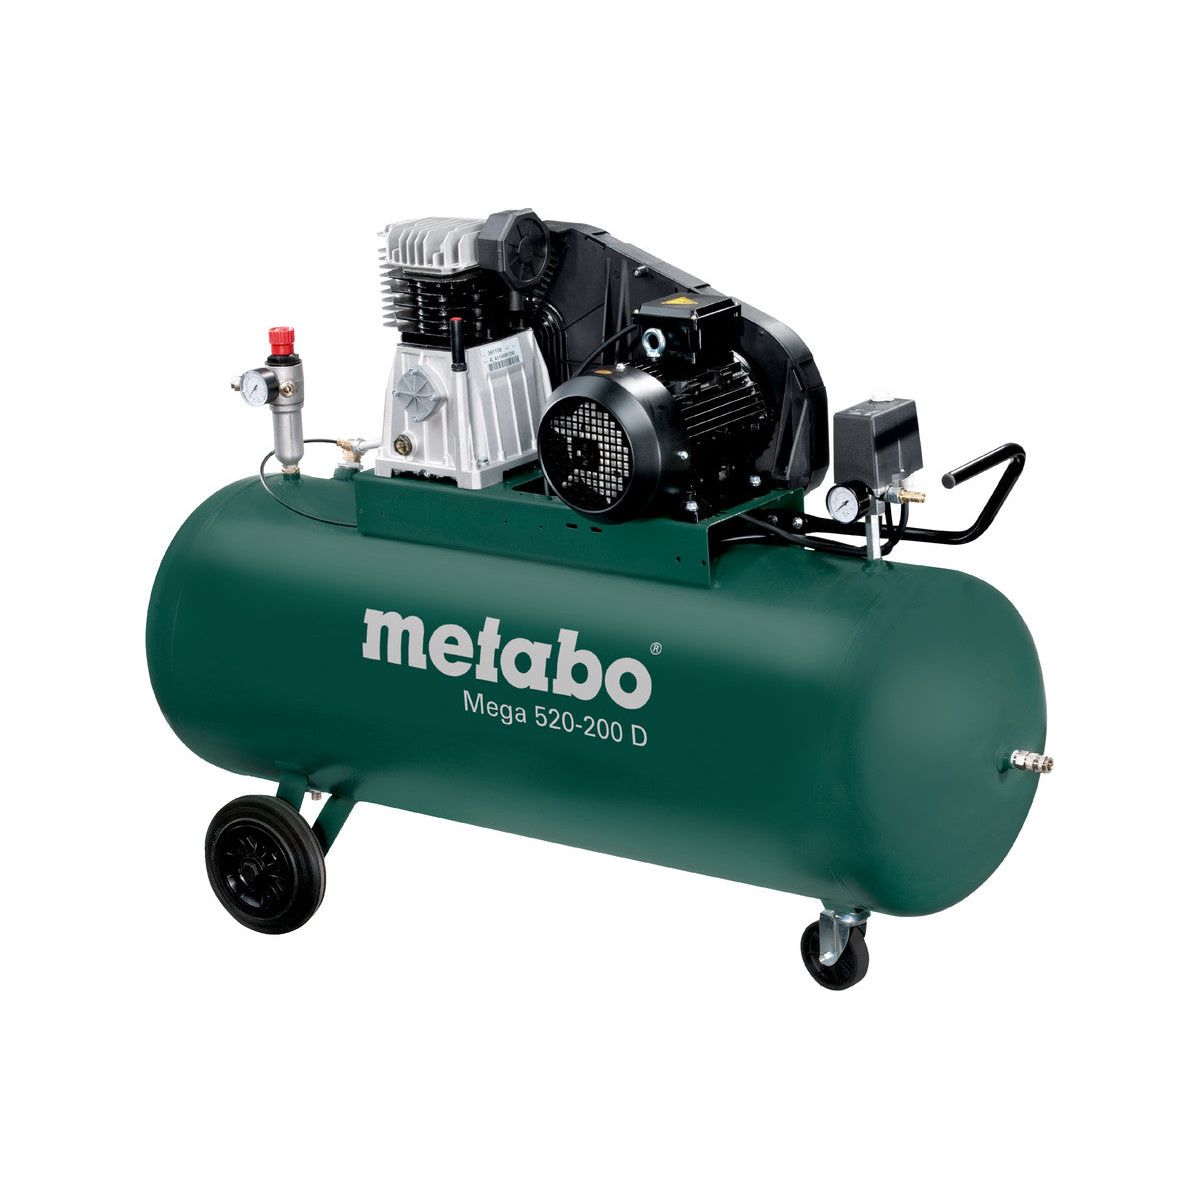 Mega 520-200 D Compresseur Metabo